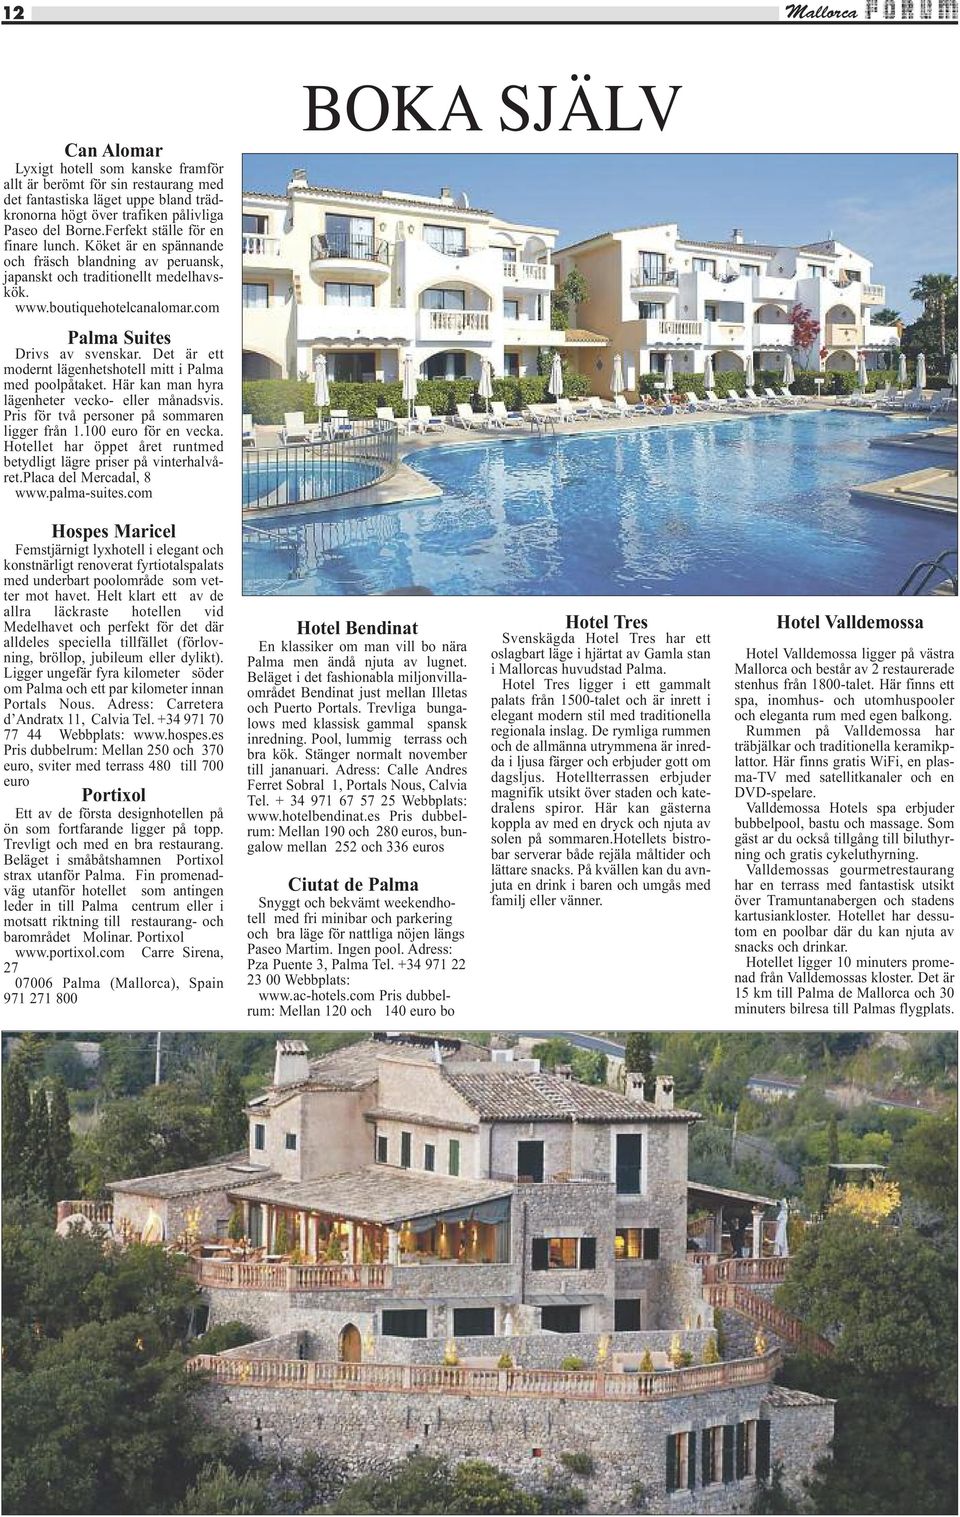 Det är ett modernt lägenhetshotell mitt i Palma med poolpåtaket. Här kan man hyra lägenheter vecko- eller månadsvis. Pris för två personer på sommaren ligger från 1.100 euro för en vecka.